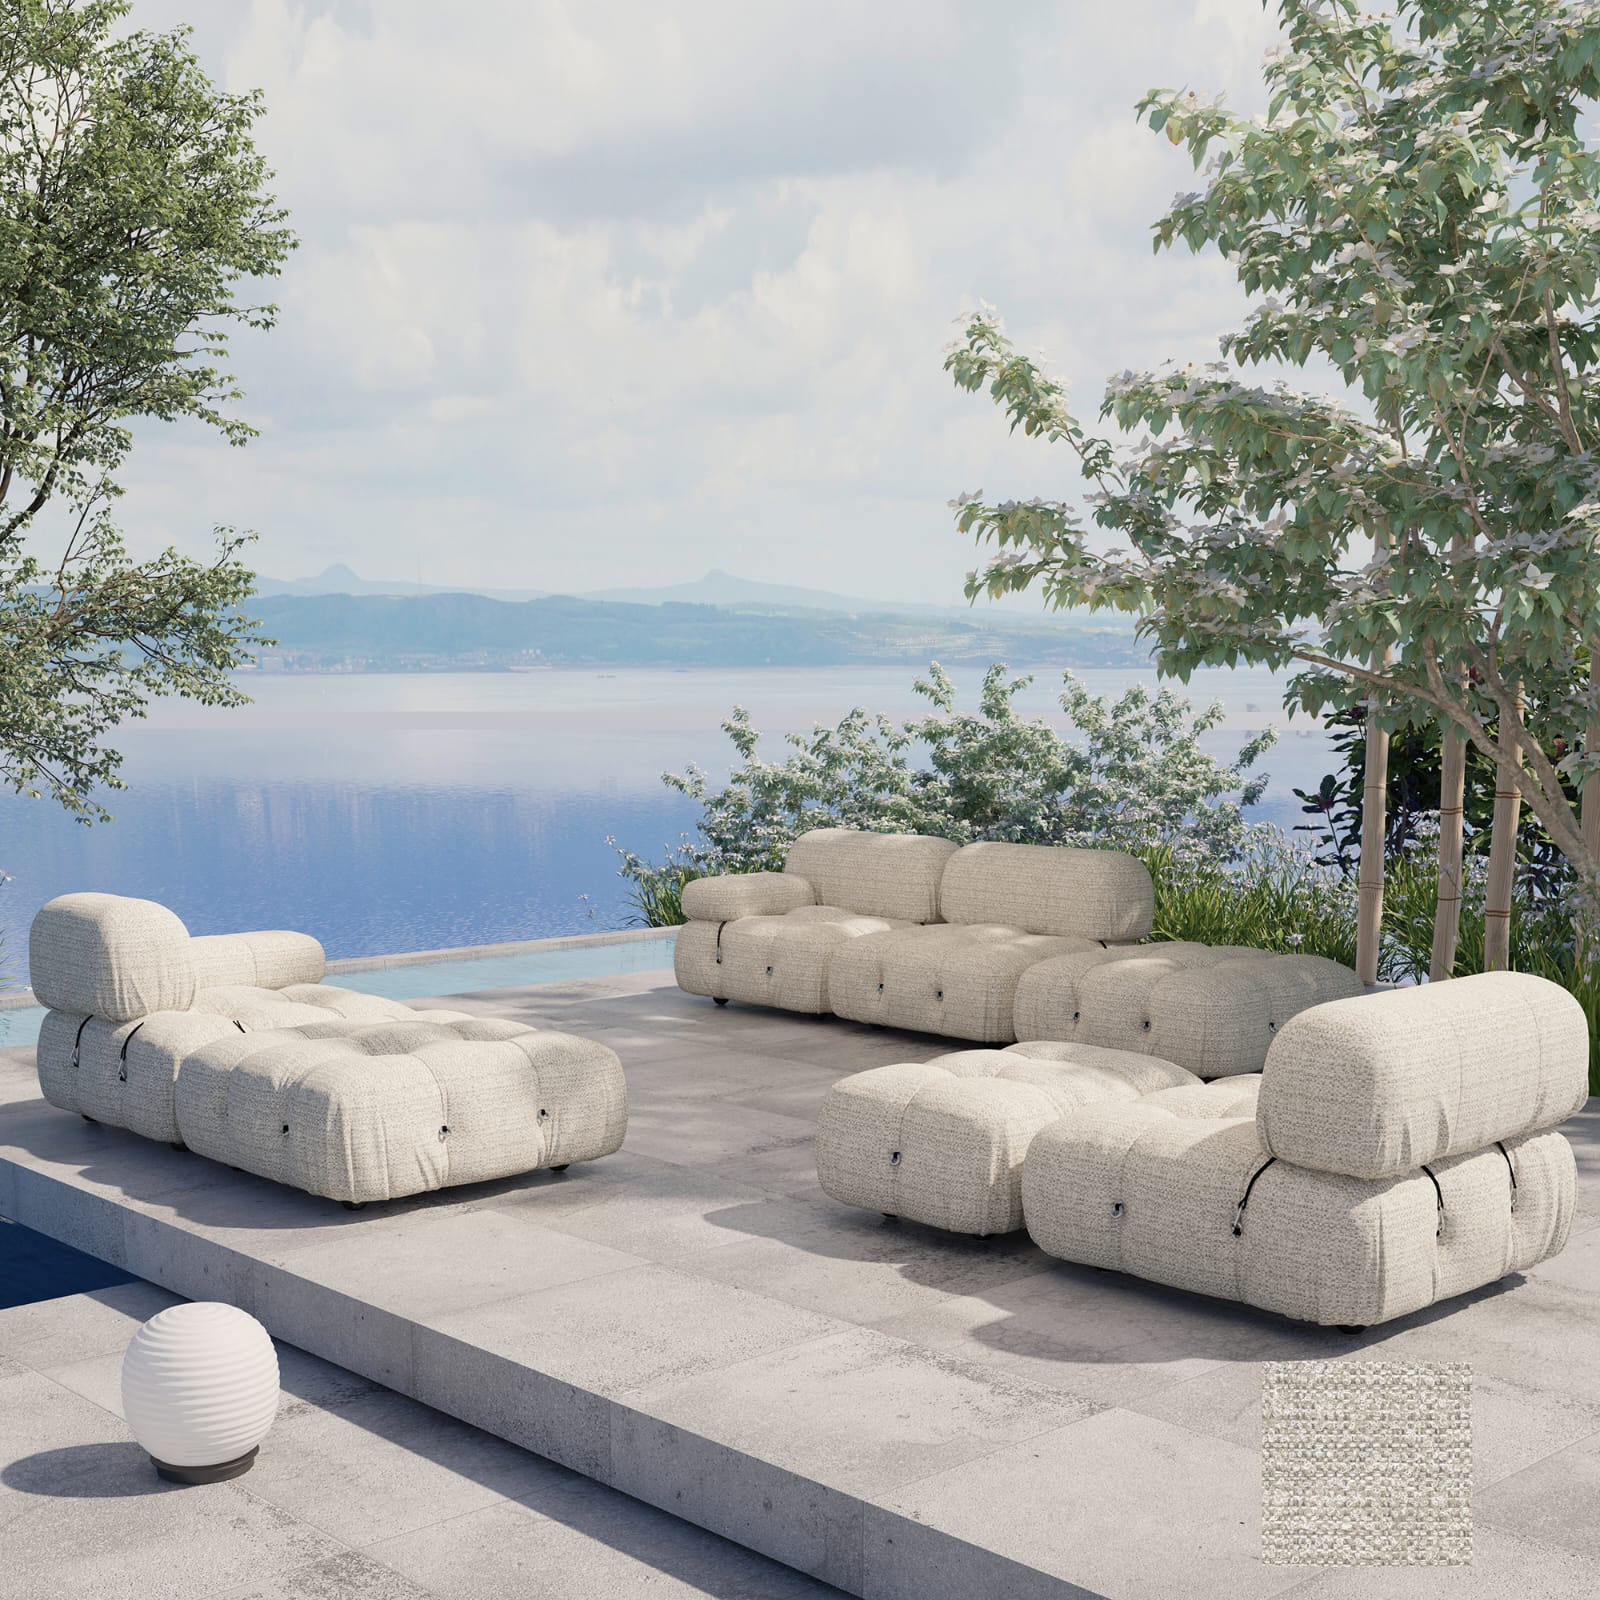 Outdoor Sofa - A Tribute to Mario Bellini Furniture - INTERIORTONIC